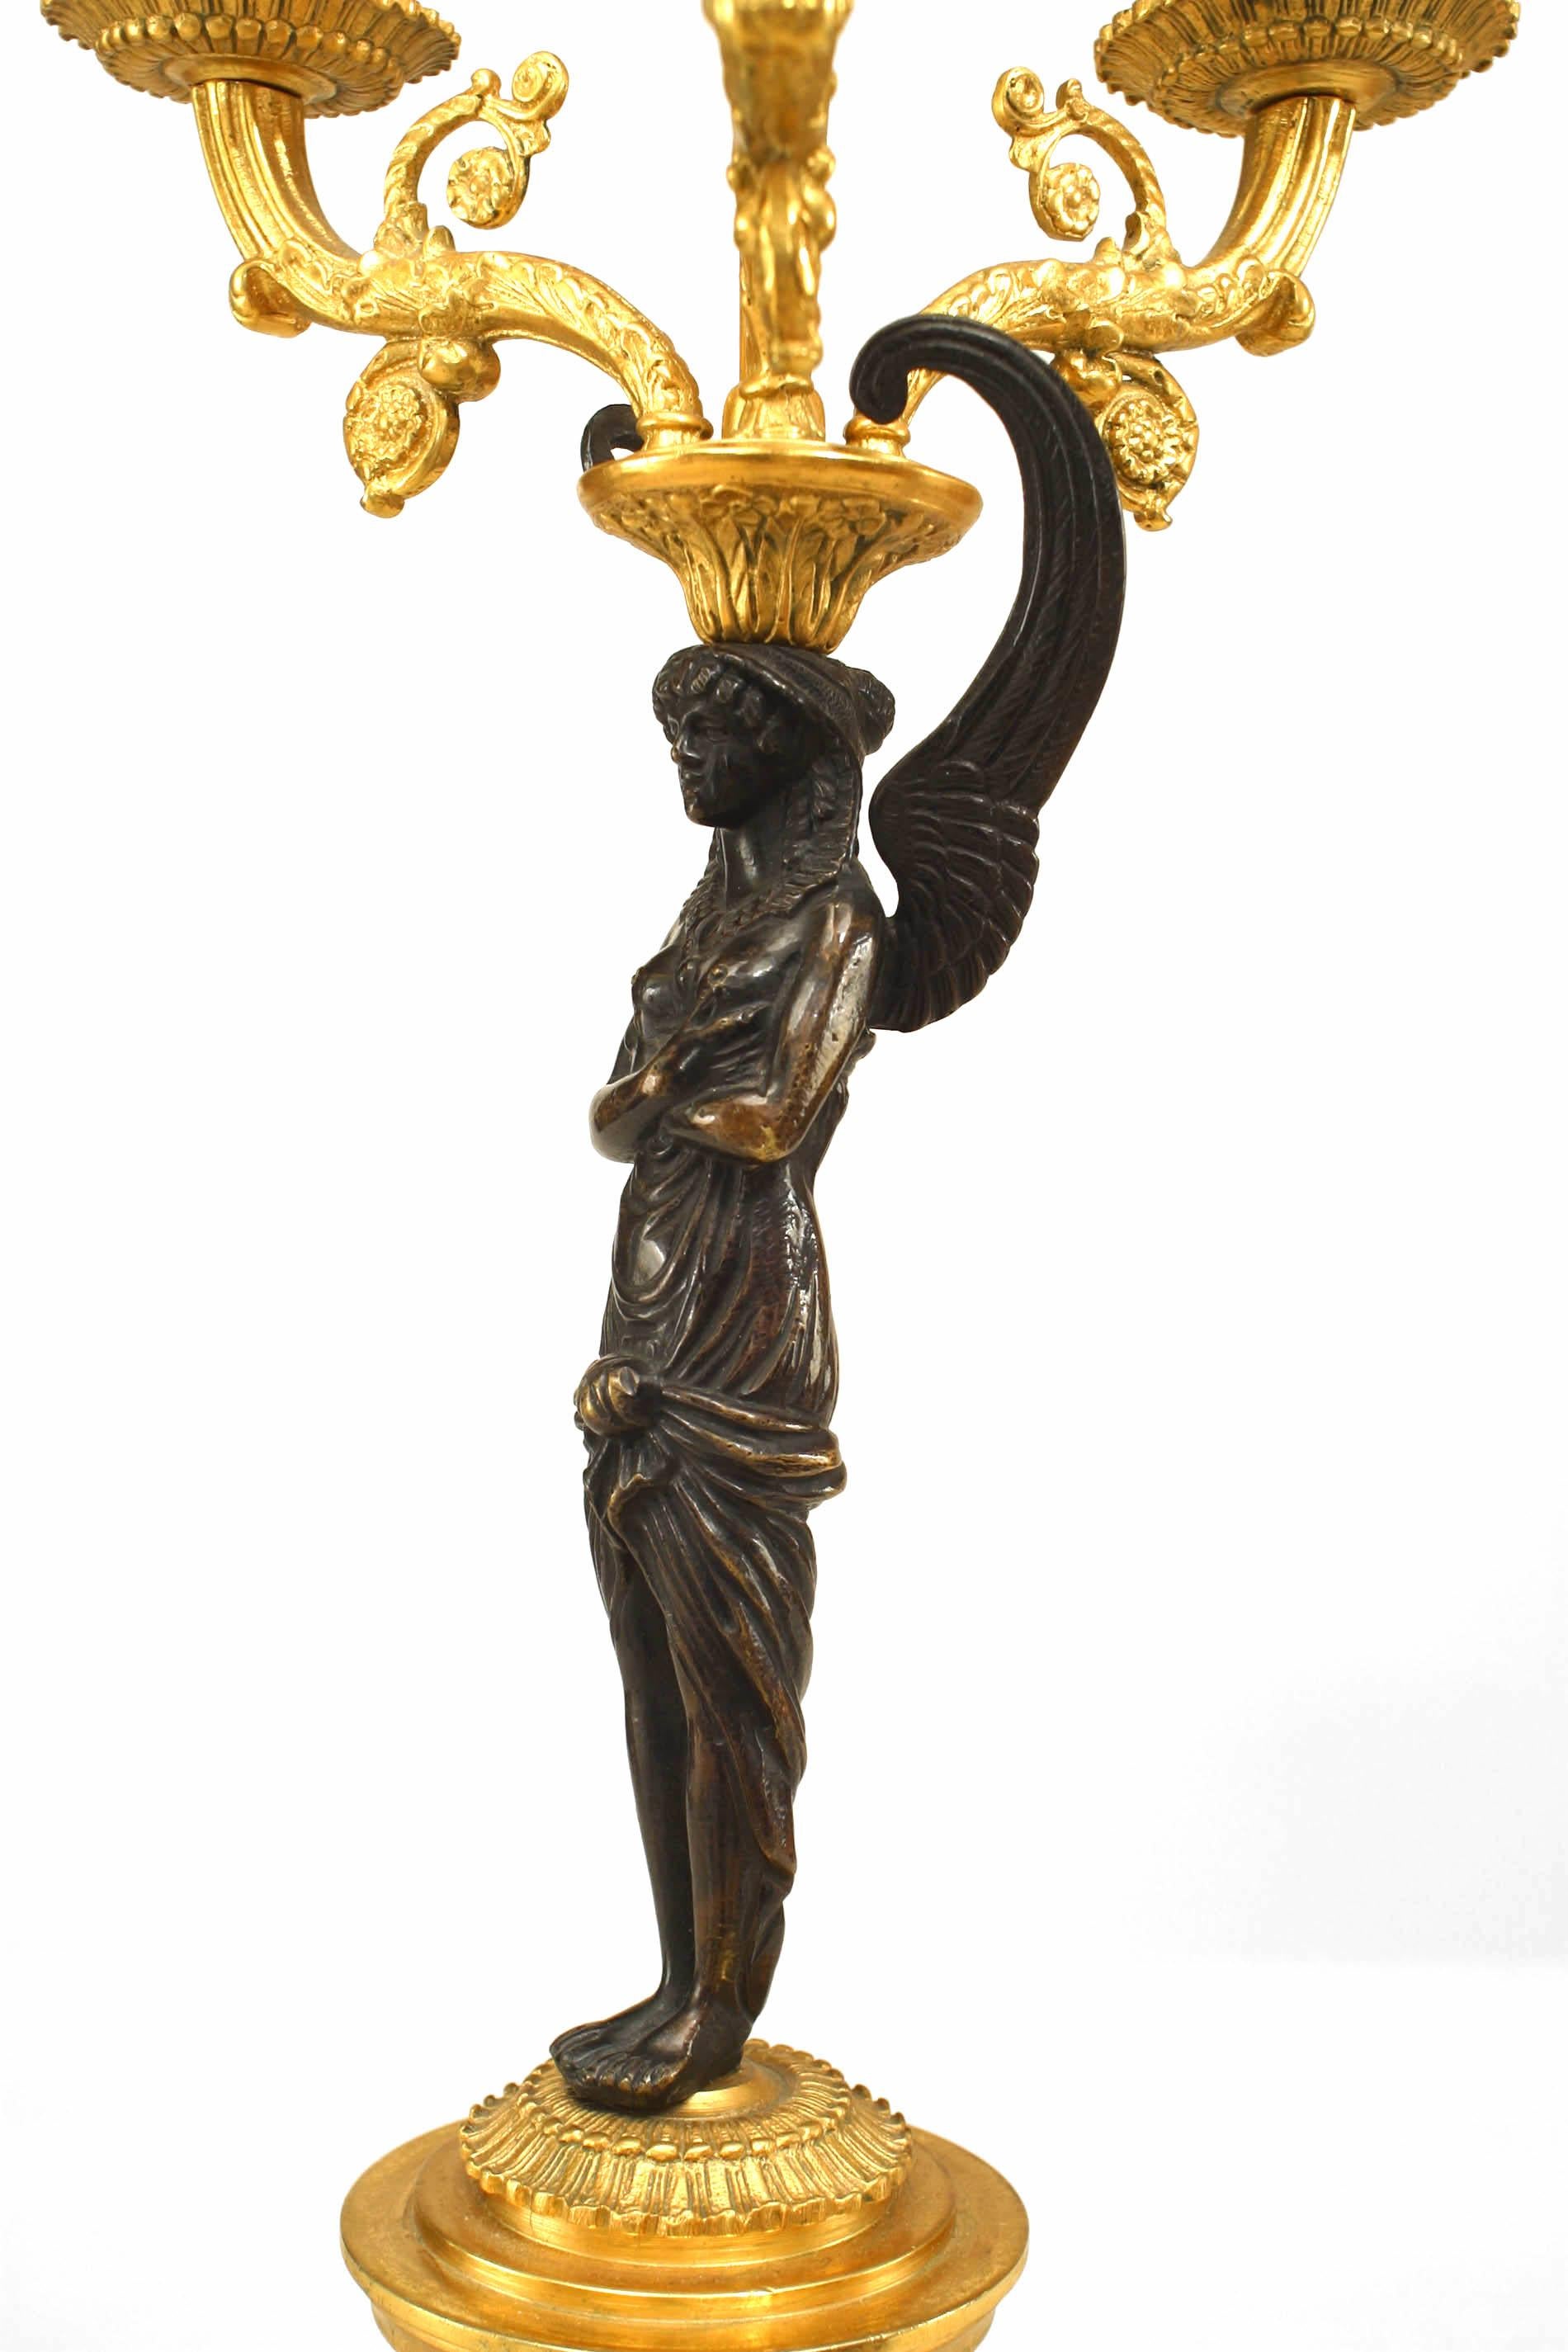 Paar vergoldete und patinierte 3-Licht-Kandelaber aus Bronze im französischen Empire-Stil (20. Jh.) mit geflügelten figuralen Säulen und Flammenabschluss auf ormolierter Basis. (Preisangabe als Paar).
 